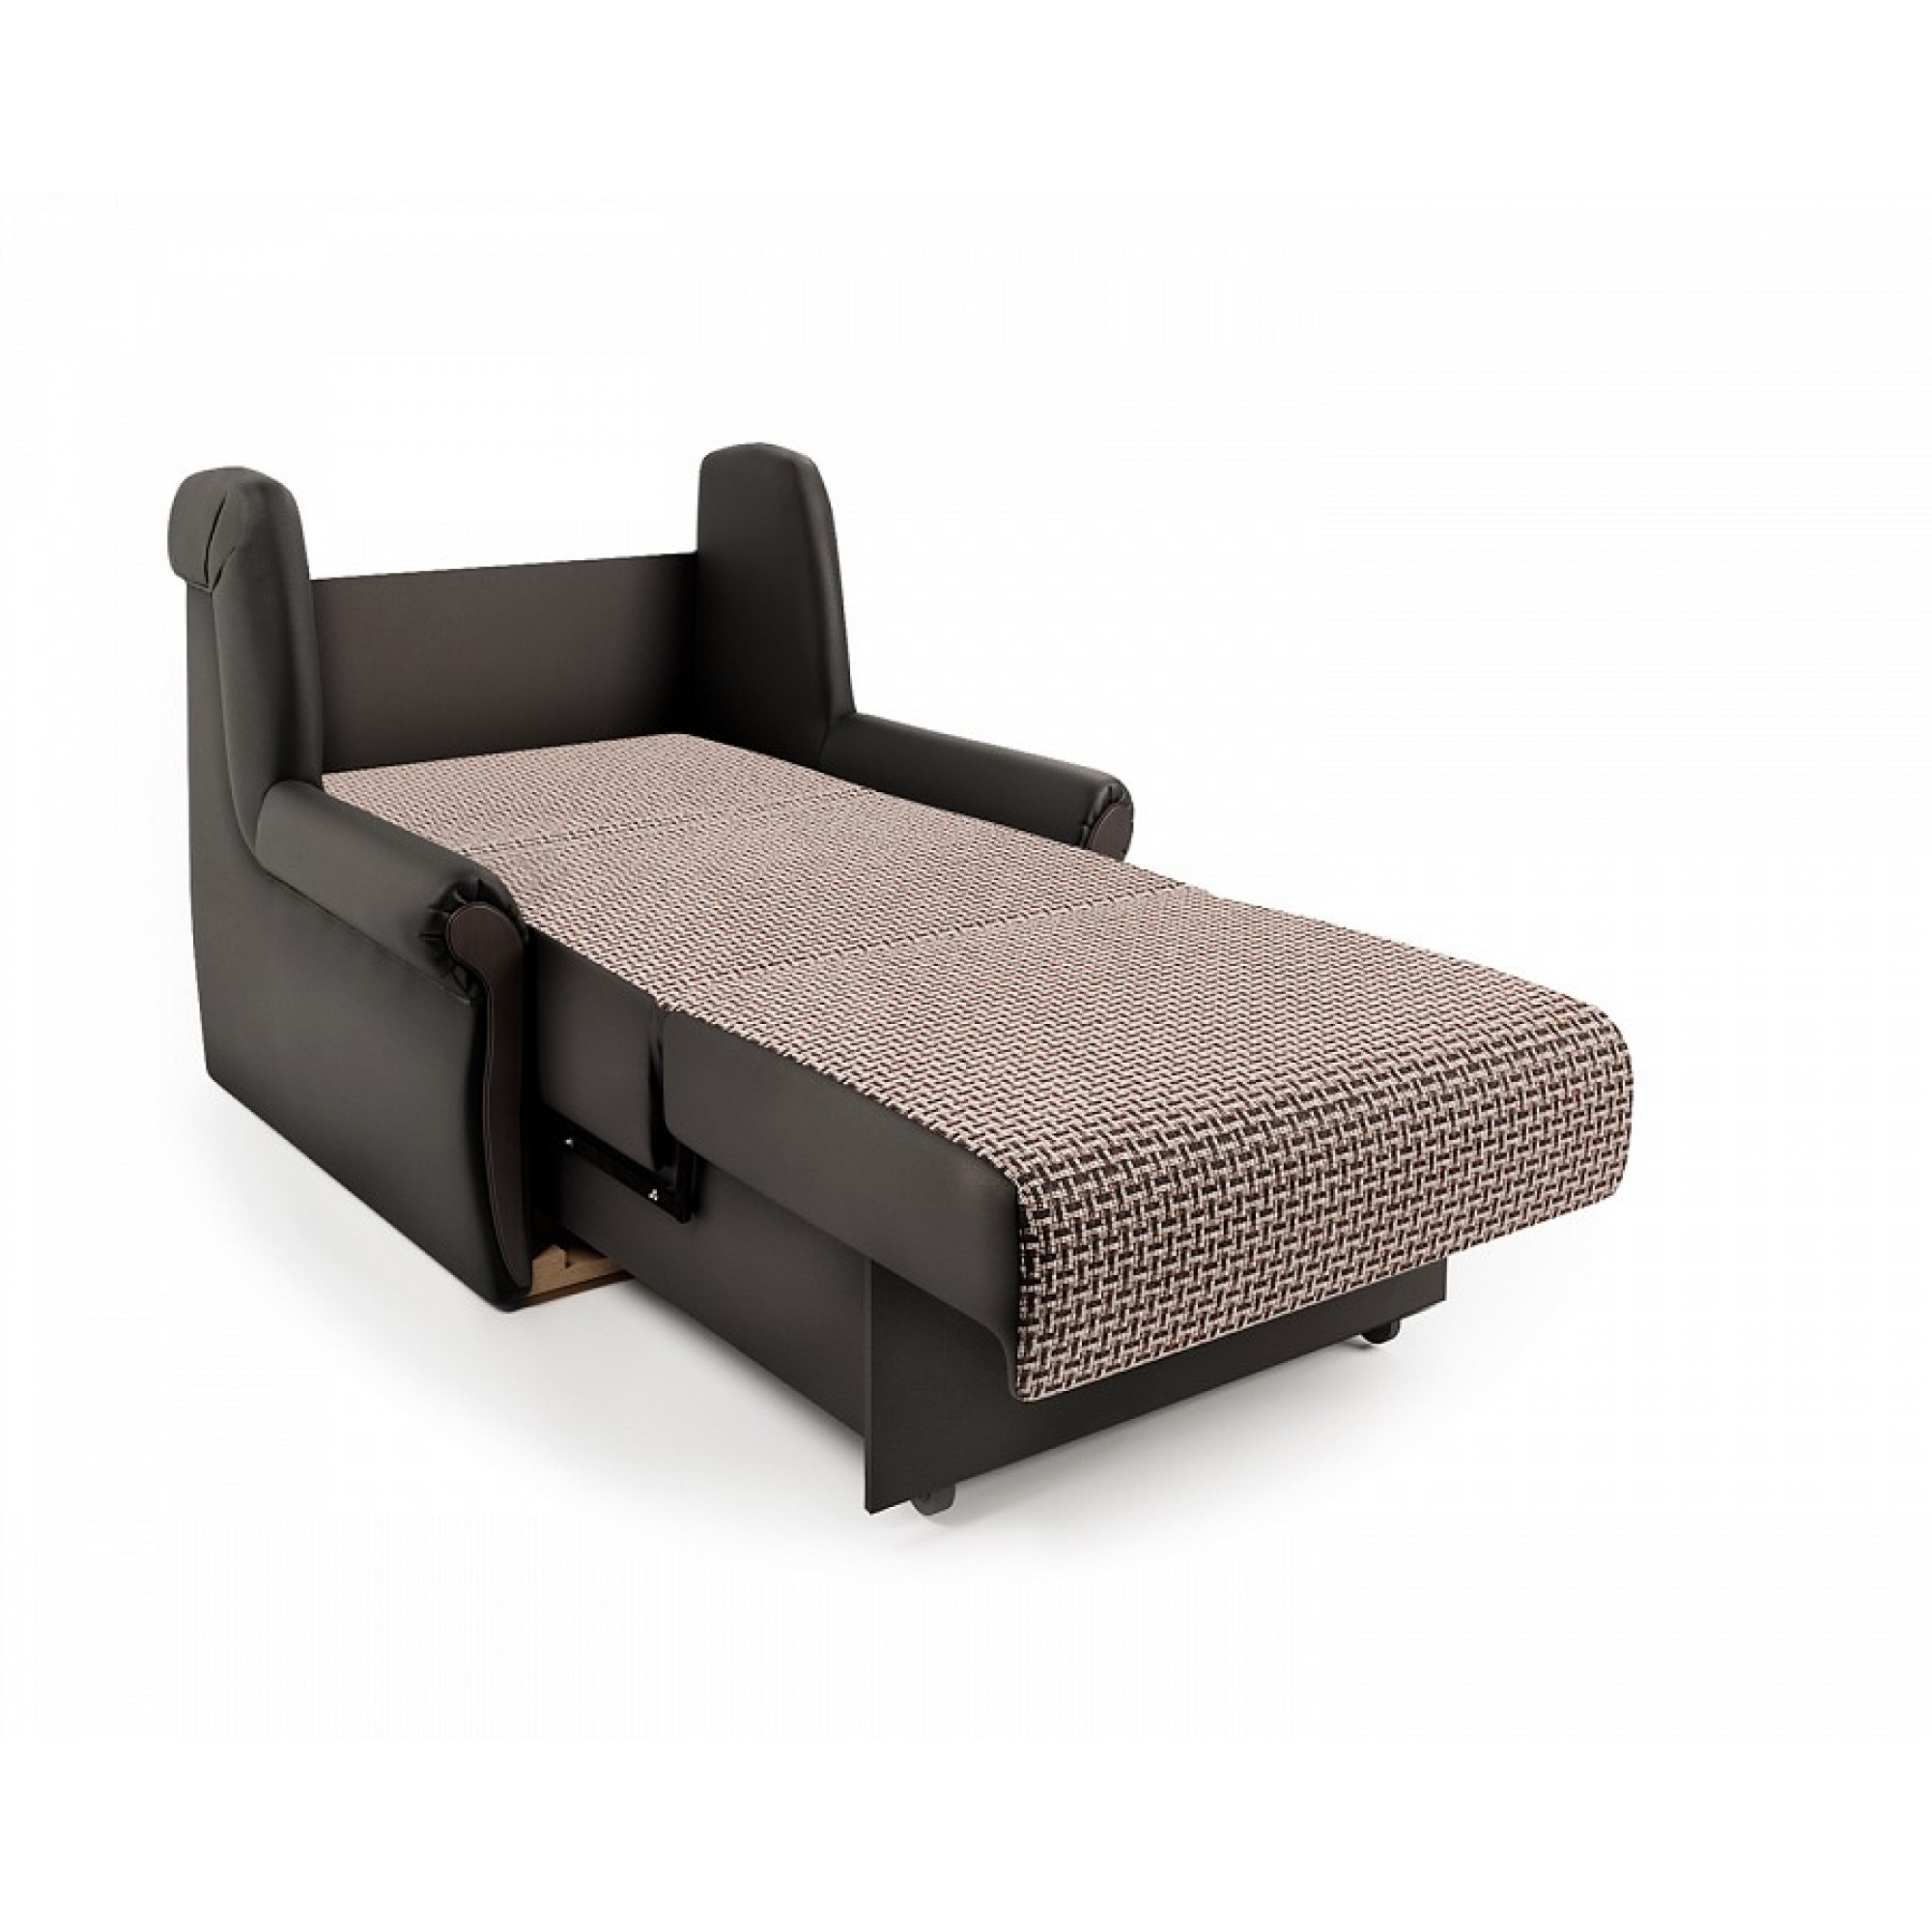 Кресло-кровать Аккорд М    SDZ_110036138018